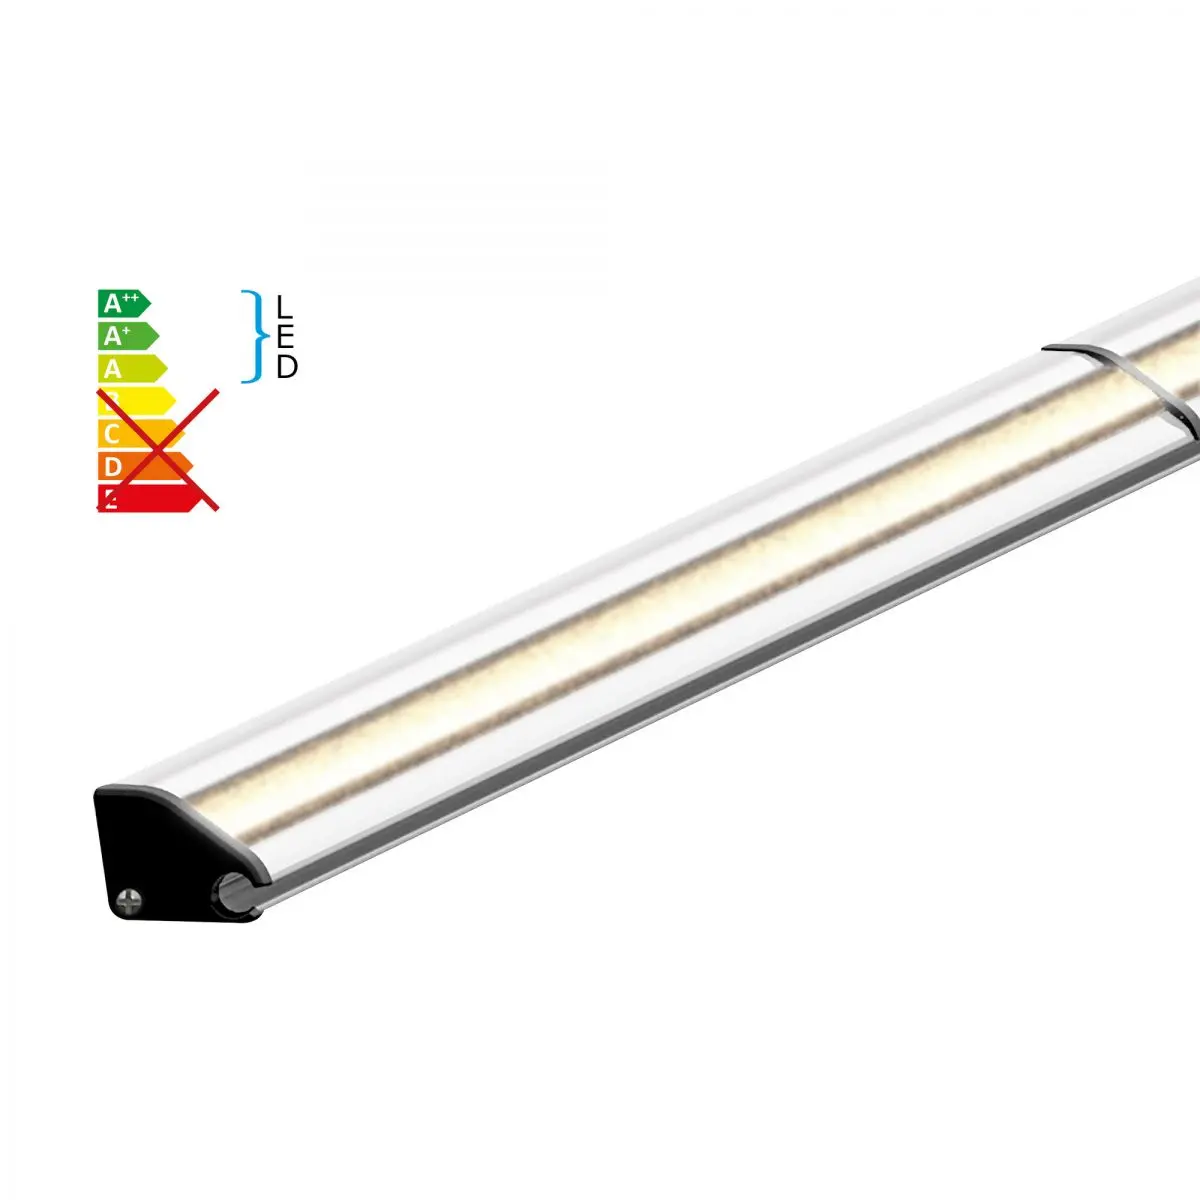 Benzi LED inclusiv profile din aluminiu pentru copertine Dometic seria 1, lungime 5 m